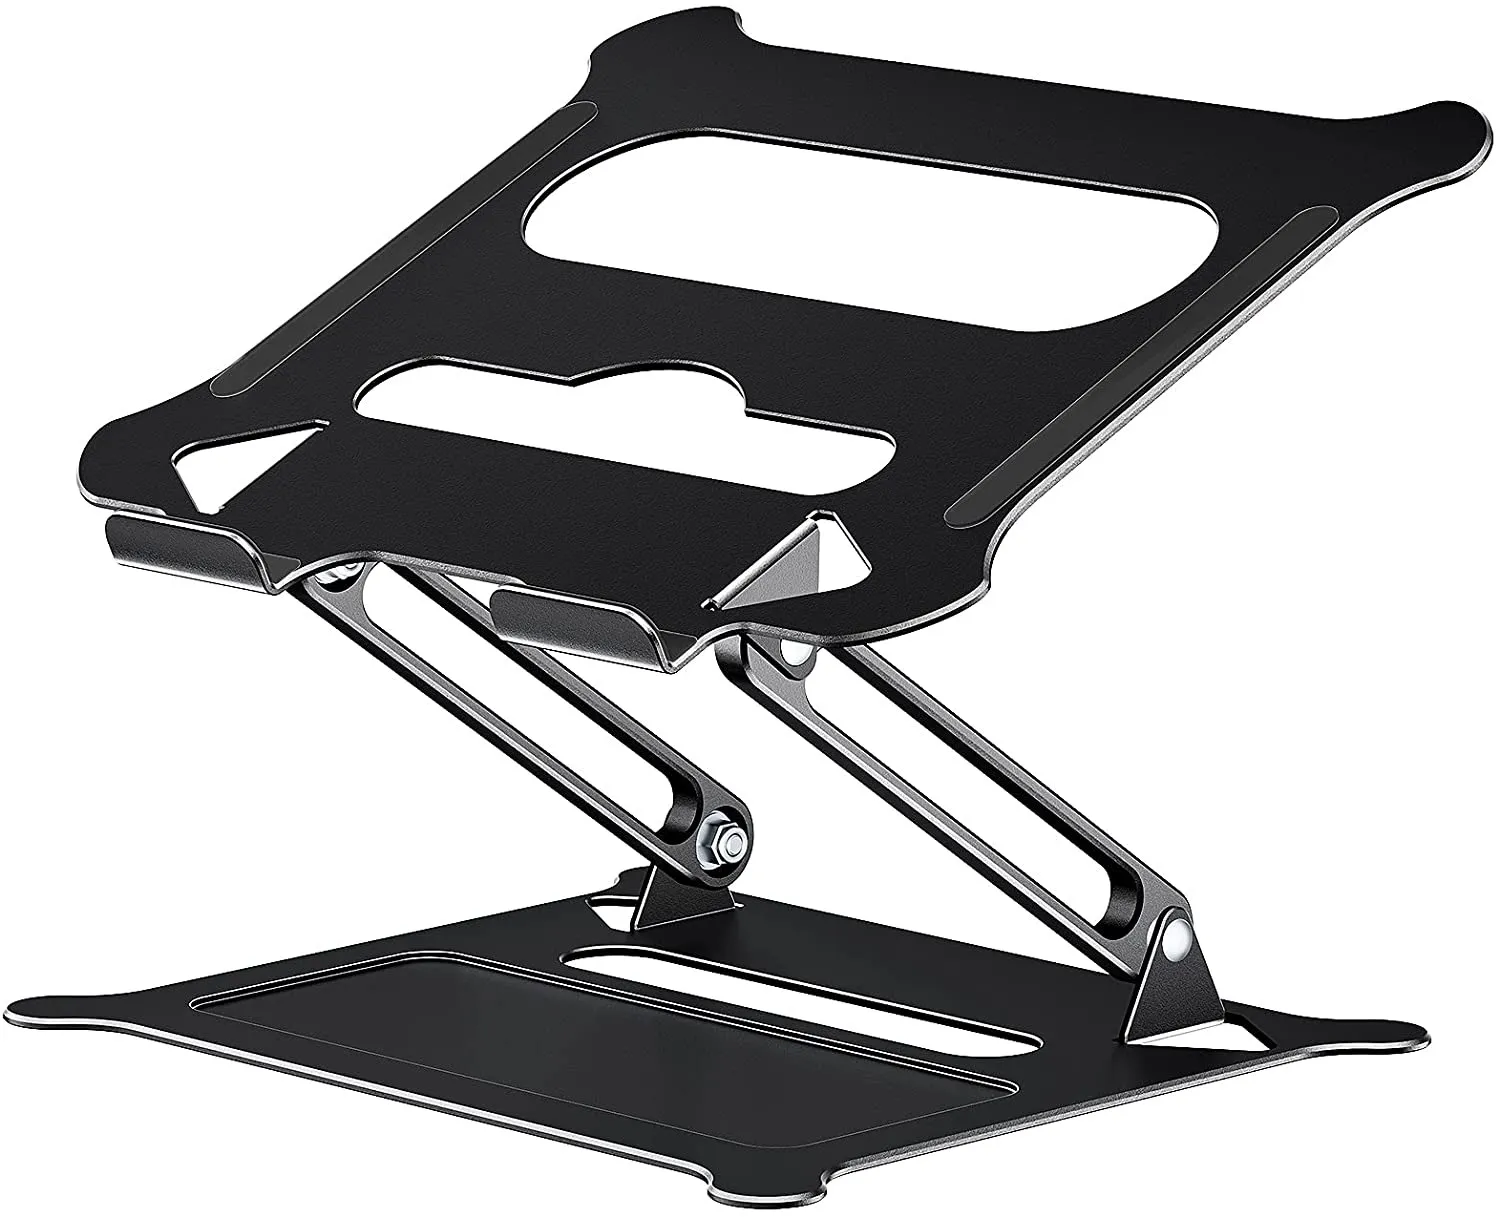 Soporte para portátil, elevador ajustable con silicona antideslizante y ganchos protectores, soporte ergonómico de aluminio para portátil compatible con MacBook Air Pro (negro)